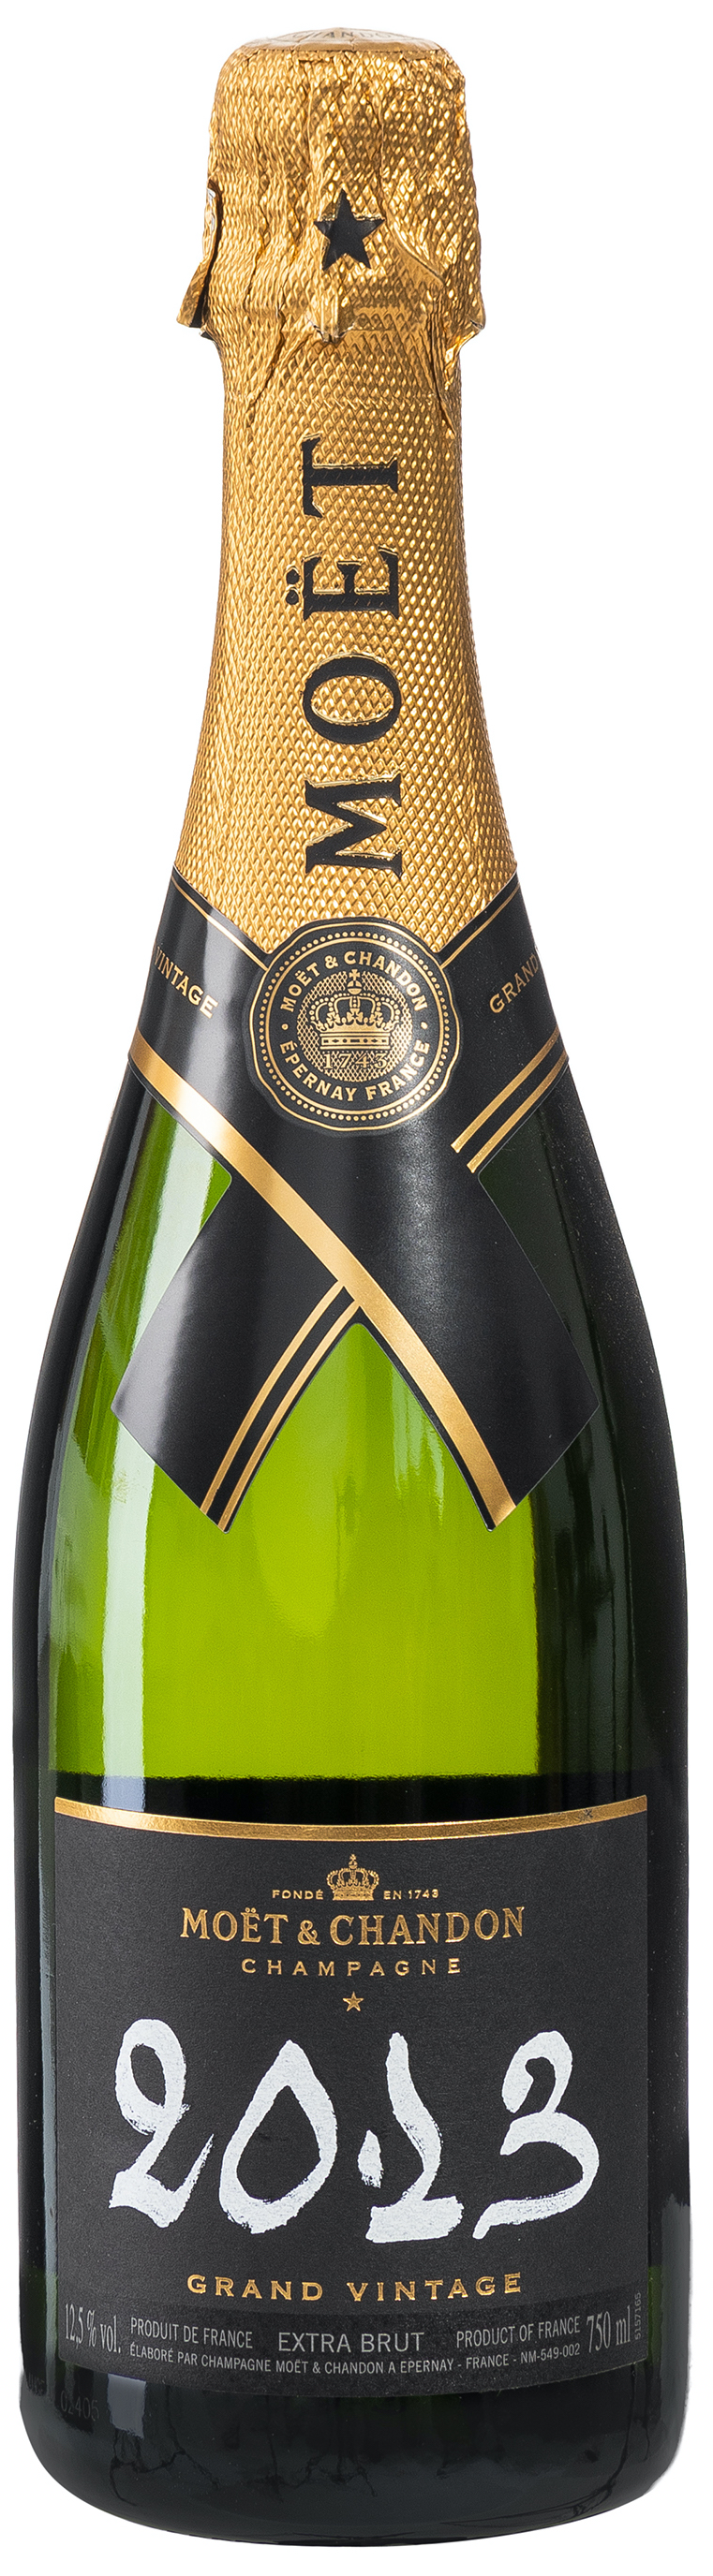 Moët & Chandon Grand Vintage 2013 Champagner 12,5% vol. 0,75L